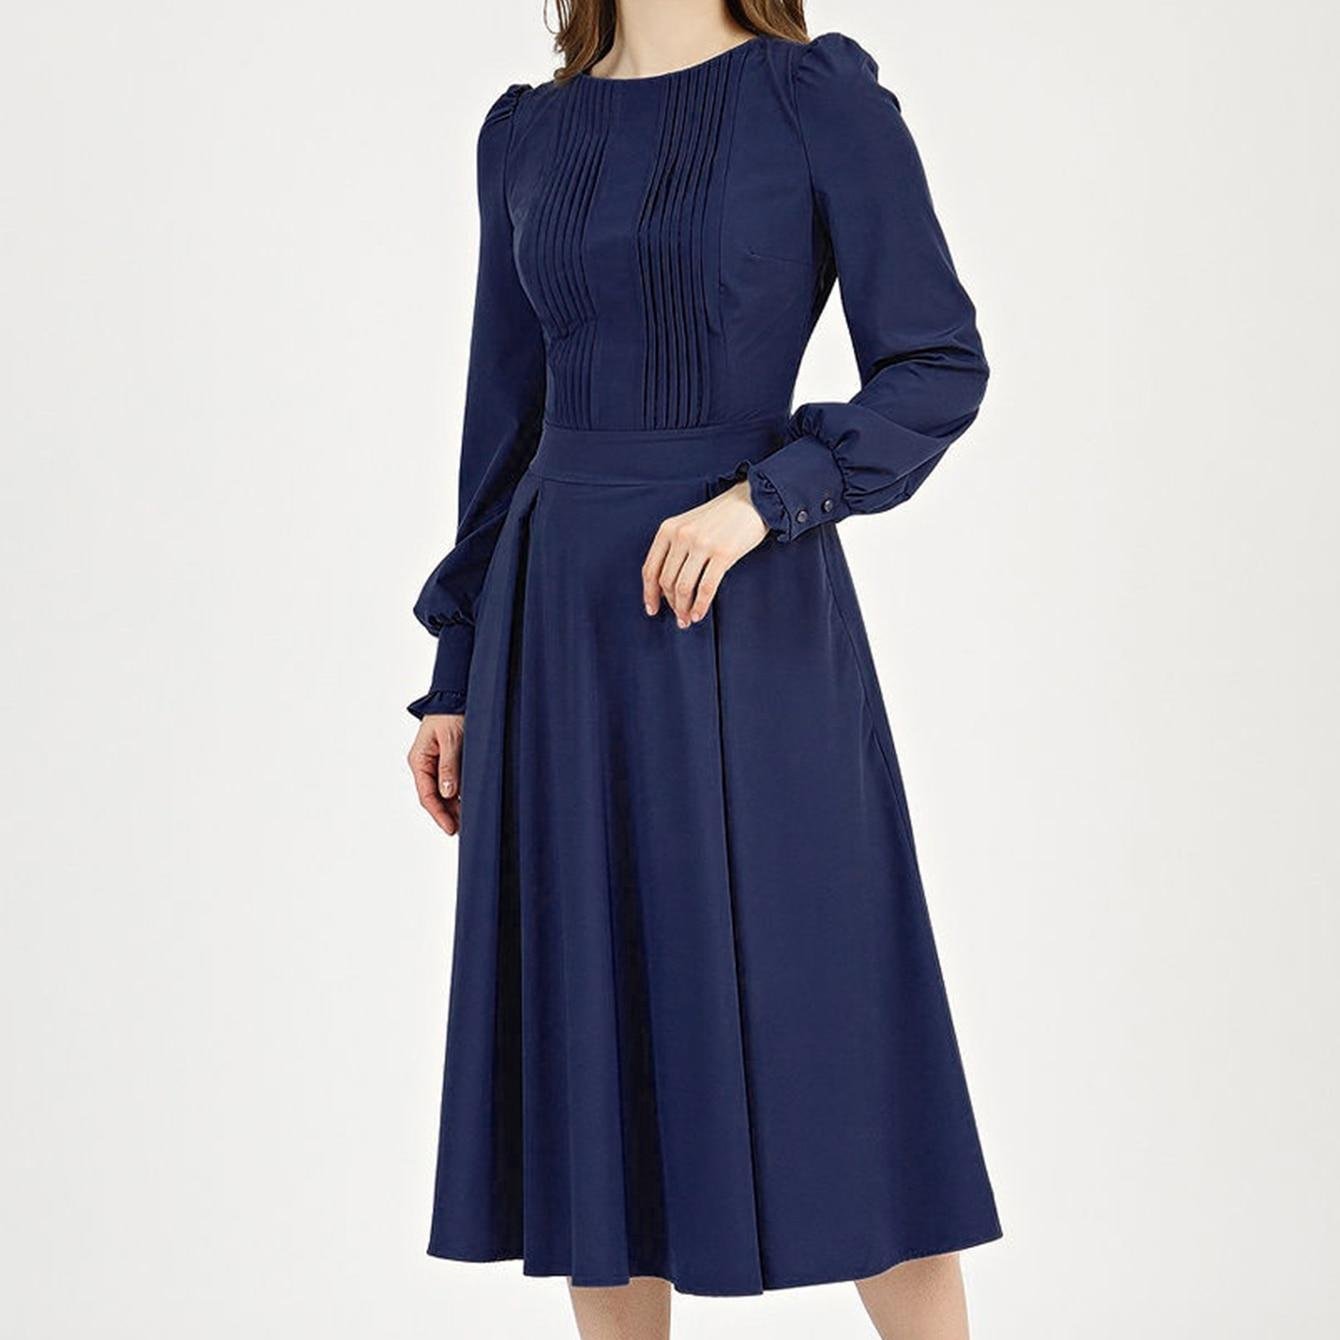 S.FLAVOR – robe Midi classique à manches longues pour femmes, élégante, col rond, couleur marine, tenue de travail, printemps été 2022